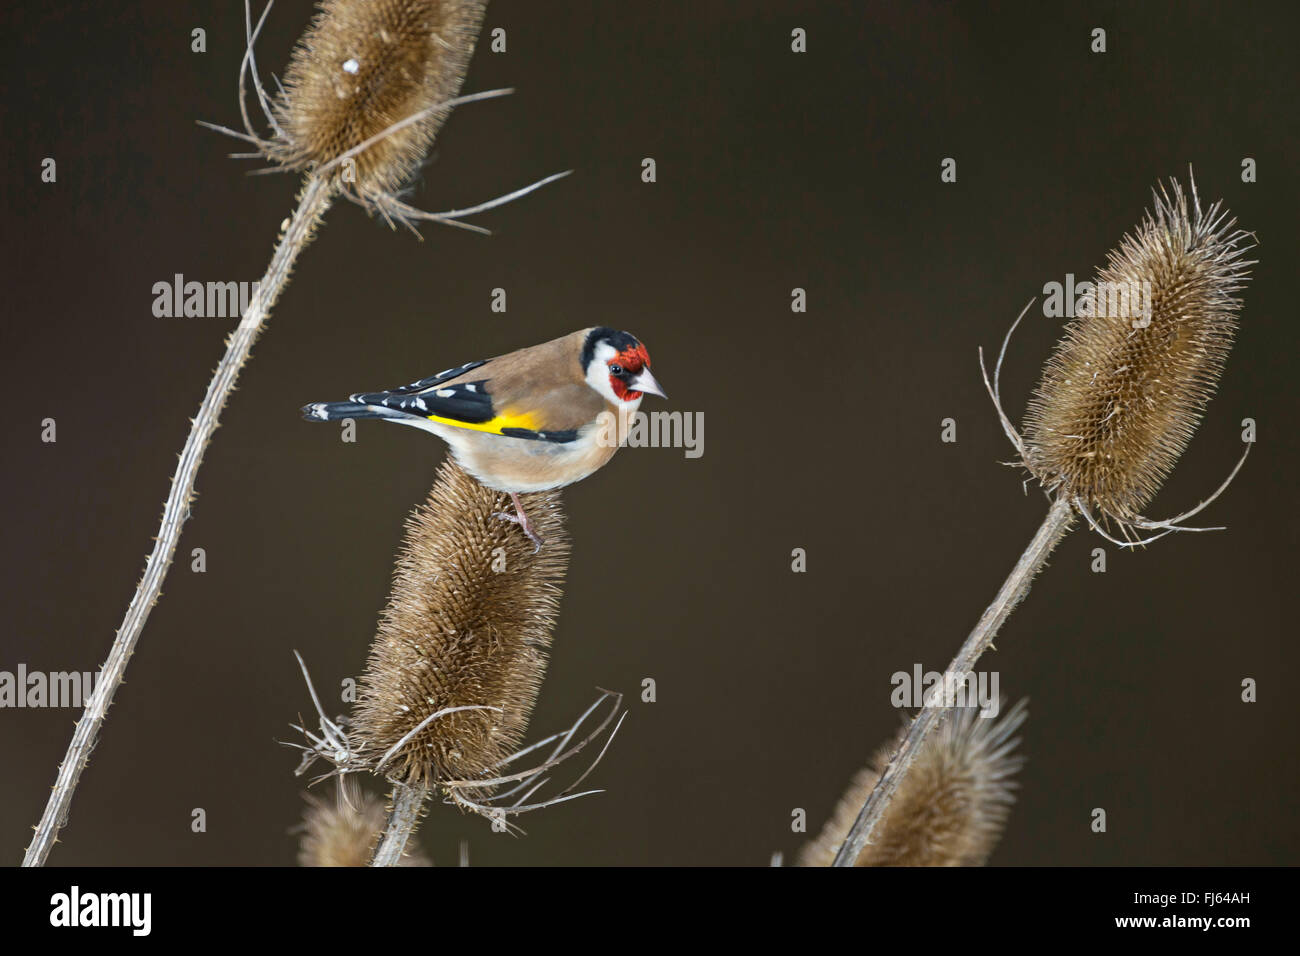 Eurasian goldfinch (Carduelis carduelis), assis sur de l'infructescence teazle, Allemagne Banque D'Images